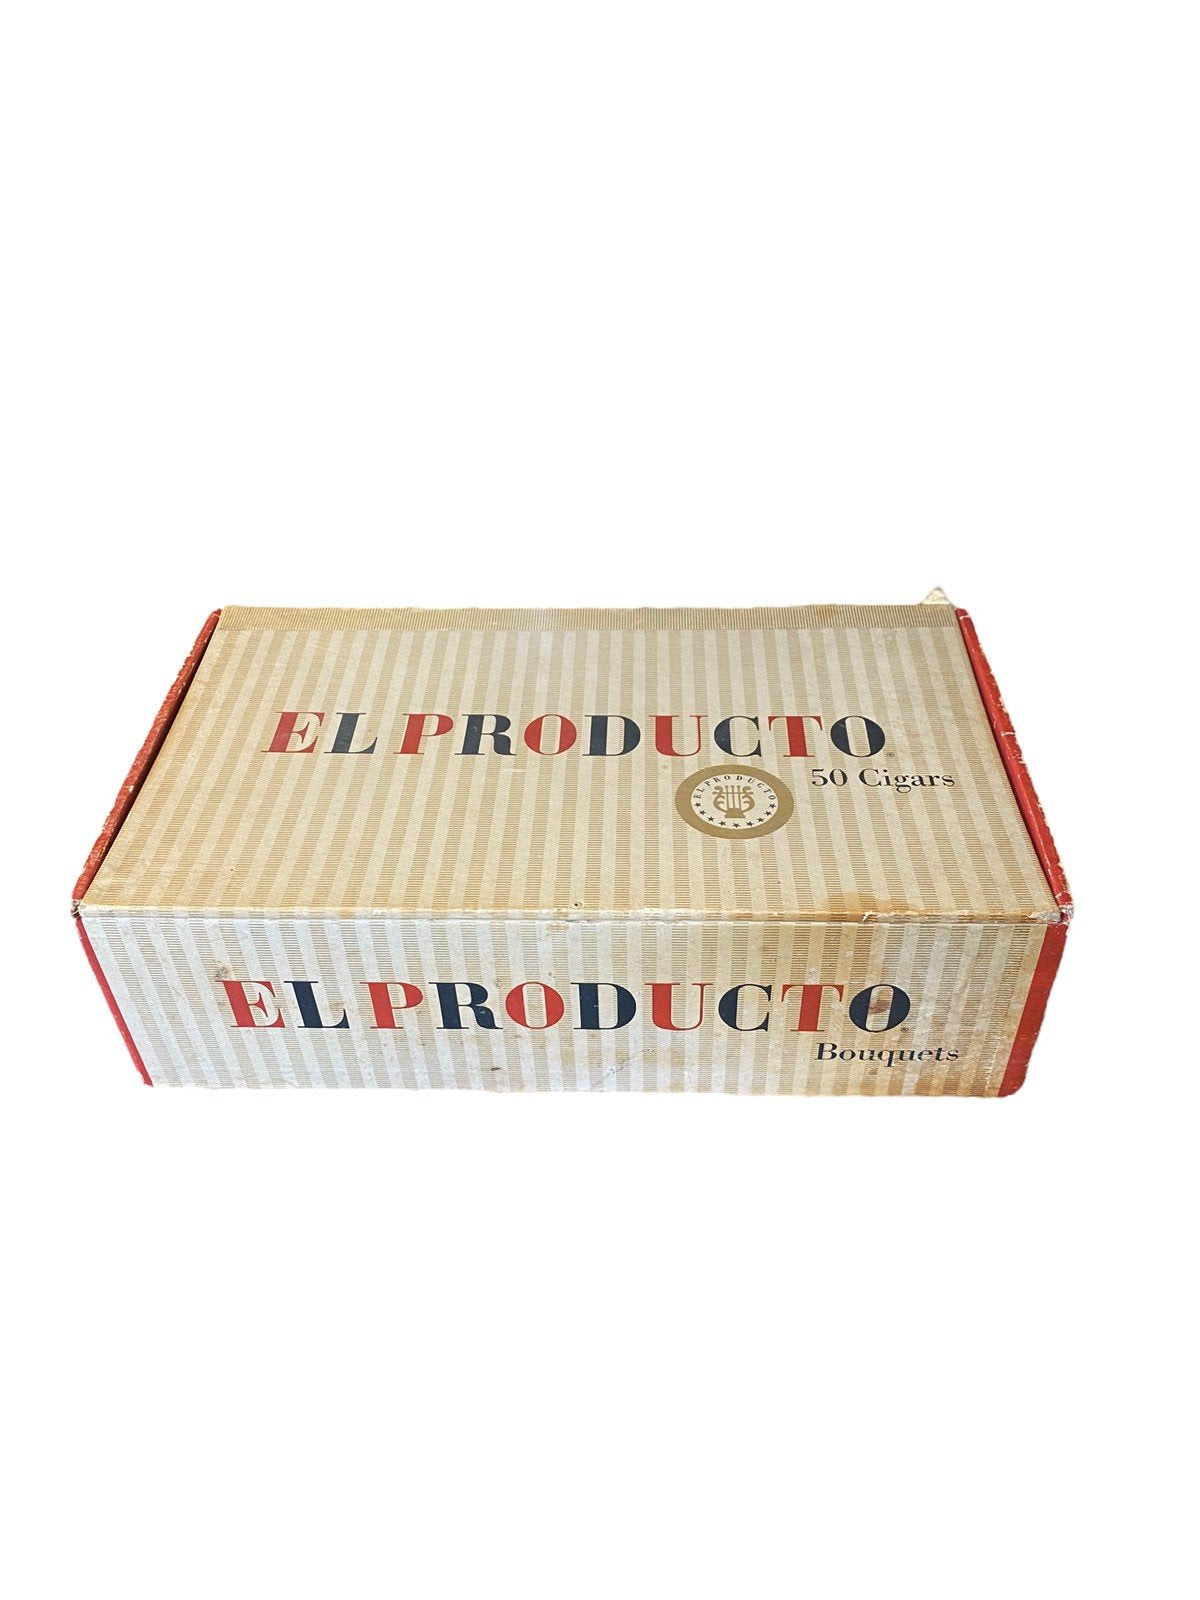 Antique El Producto Cigar Box Collectable 1960s